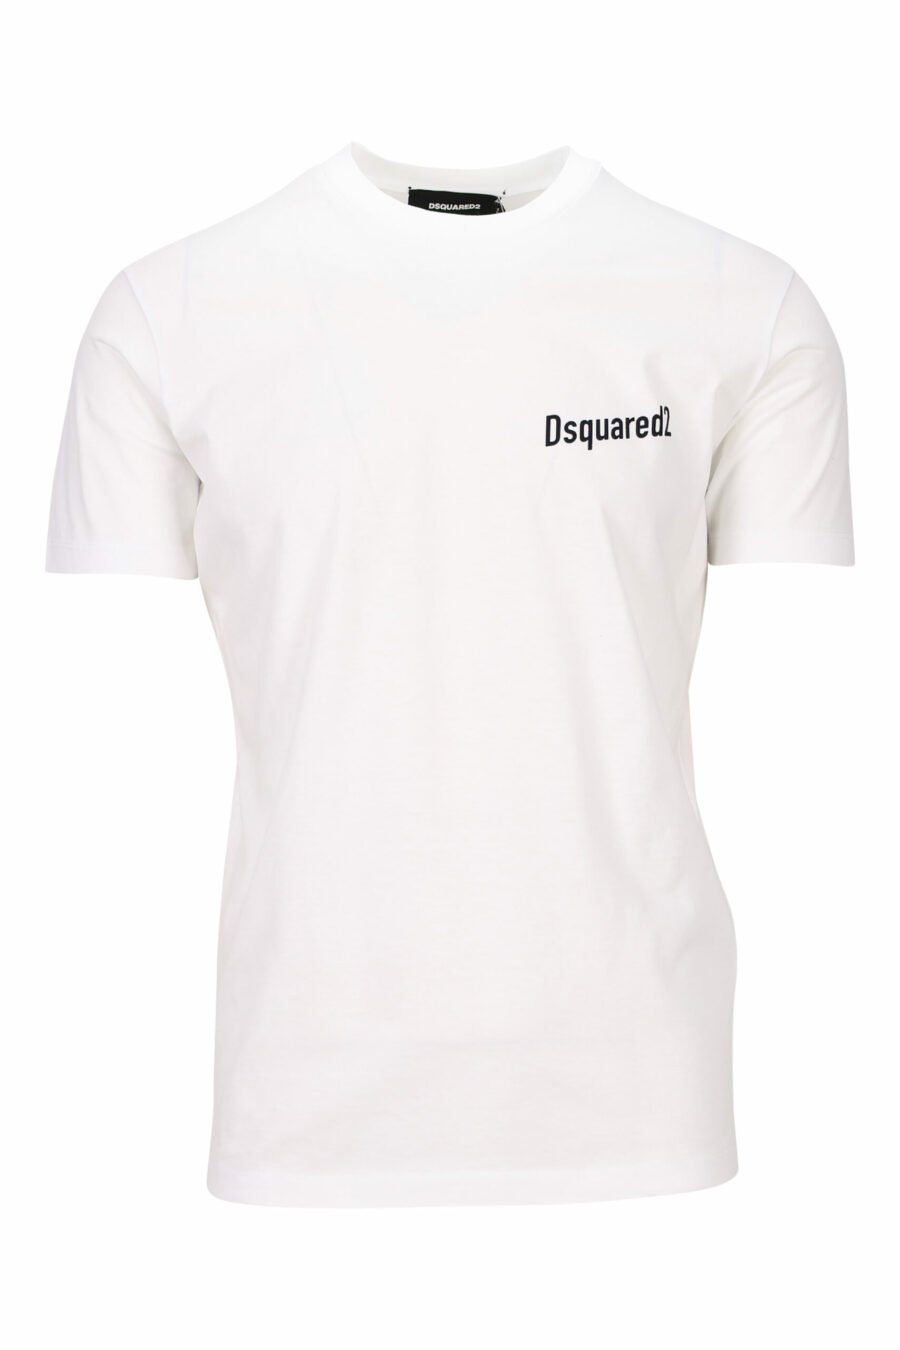 Weißes T-Shirt mit Mini-Logo auf der Vorderseite und "Futurist Flavour"-Aufdruck auf der Rückseite - 8054148264994 skaliert